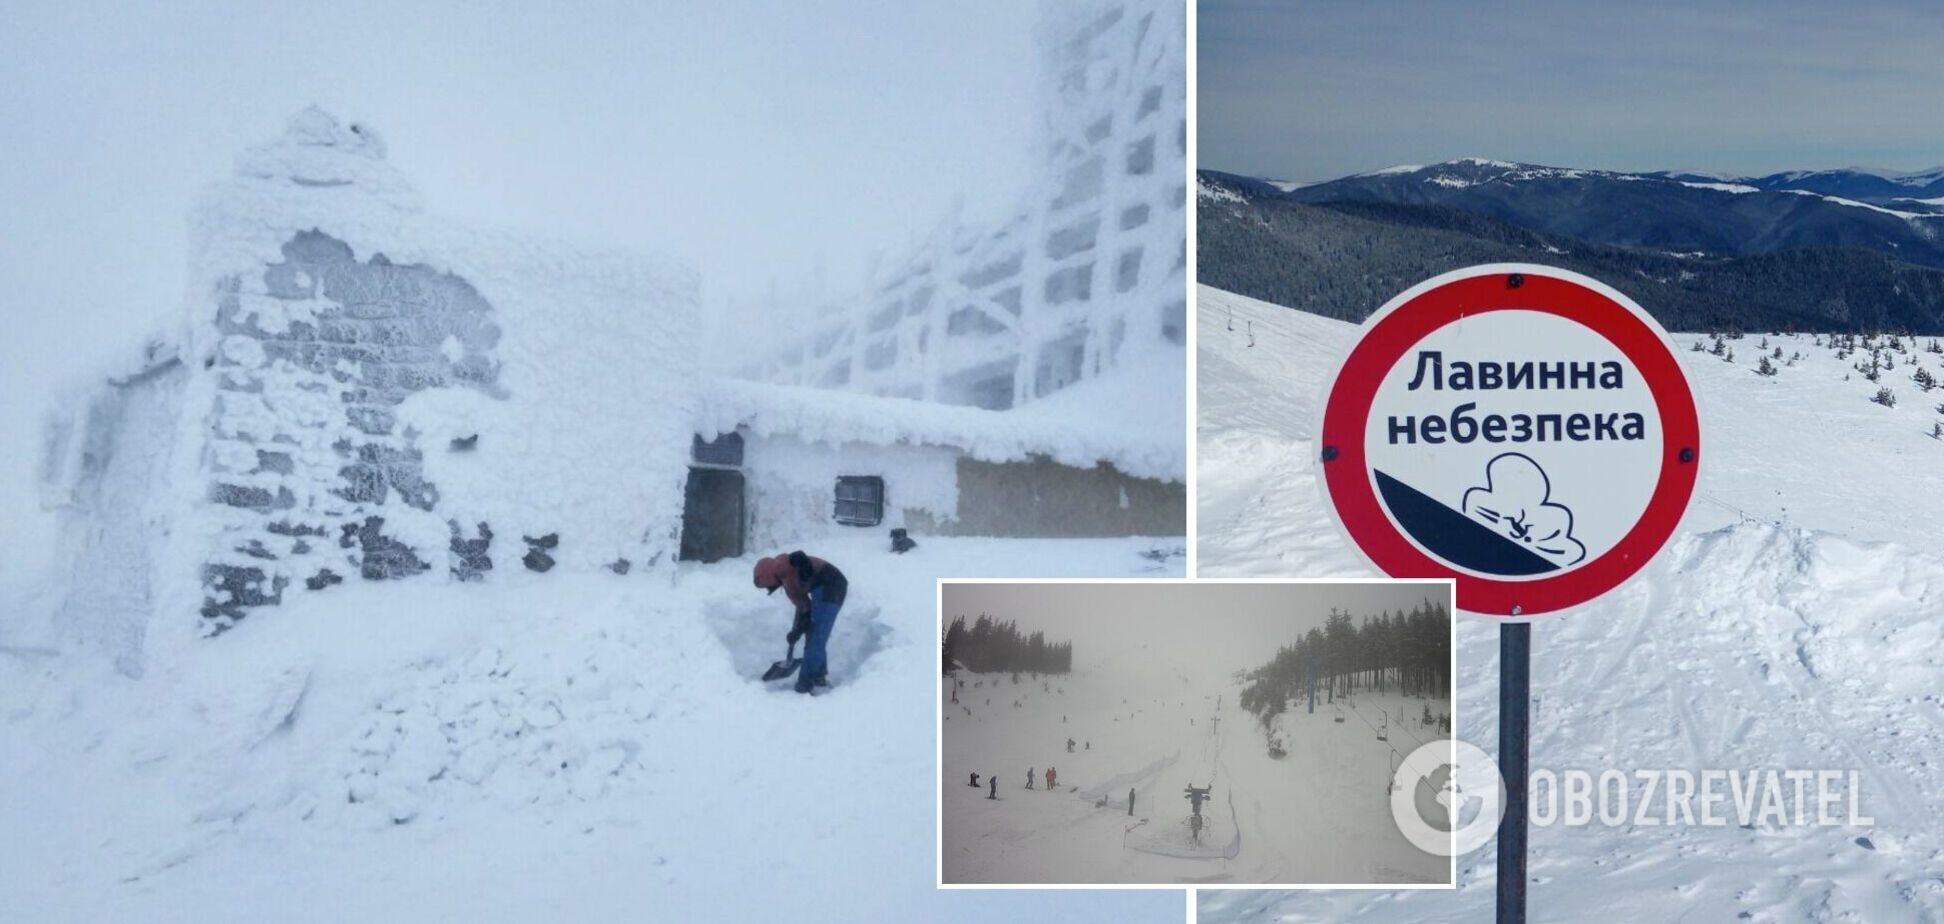 В Карпатах ударил мороз до 18 градусов, горы замело снегом: туристов предупредили об опасности. Фото